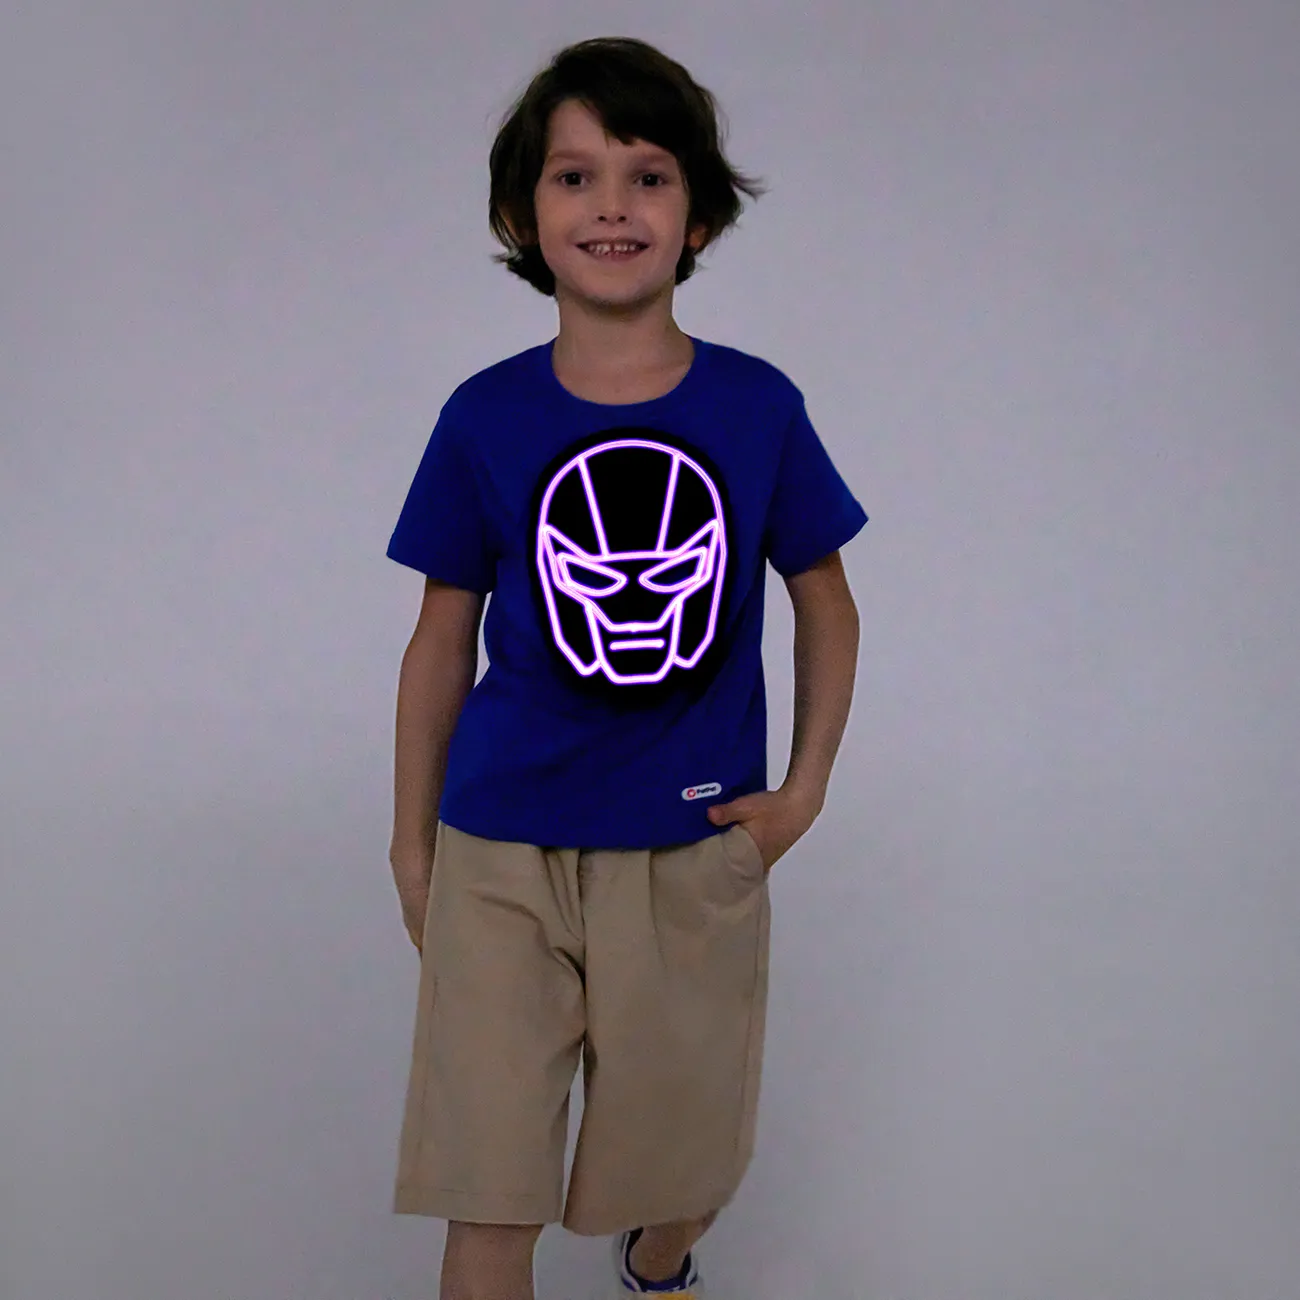 Enfant en bas âge Garçon Velcro Enfantin Manches courtes T-Shirt Bleu big image 1